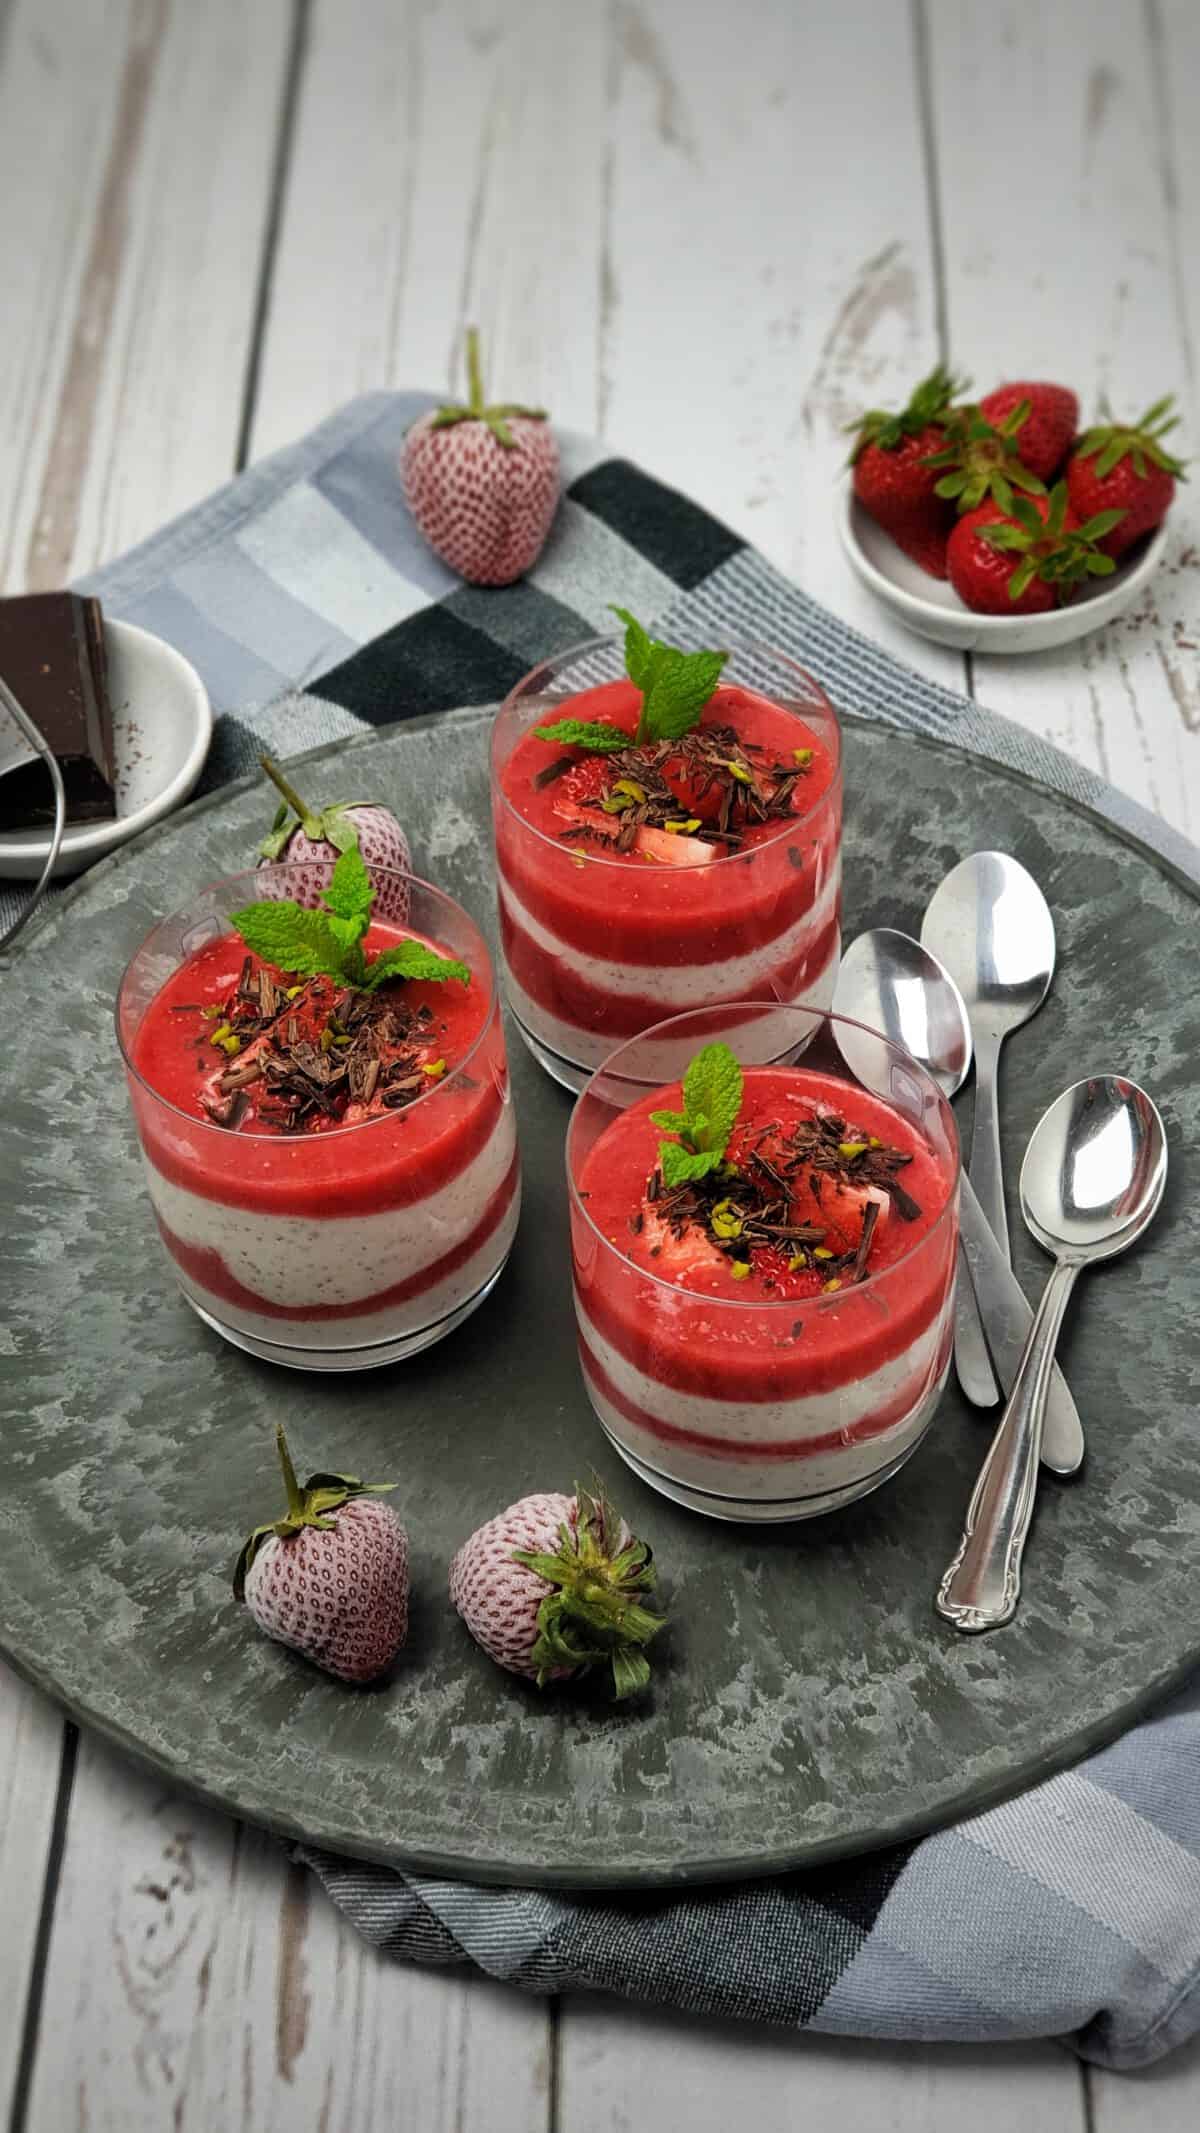 3 Gläser mit Joghurt-Dessert im Glas geschichtet mit Erdbeerpüree. Dekoriert mit Schokolade und frischer Minze.